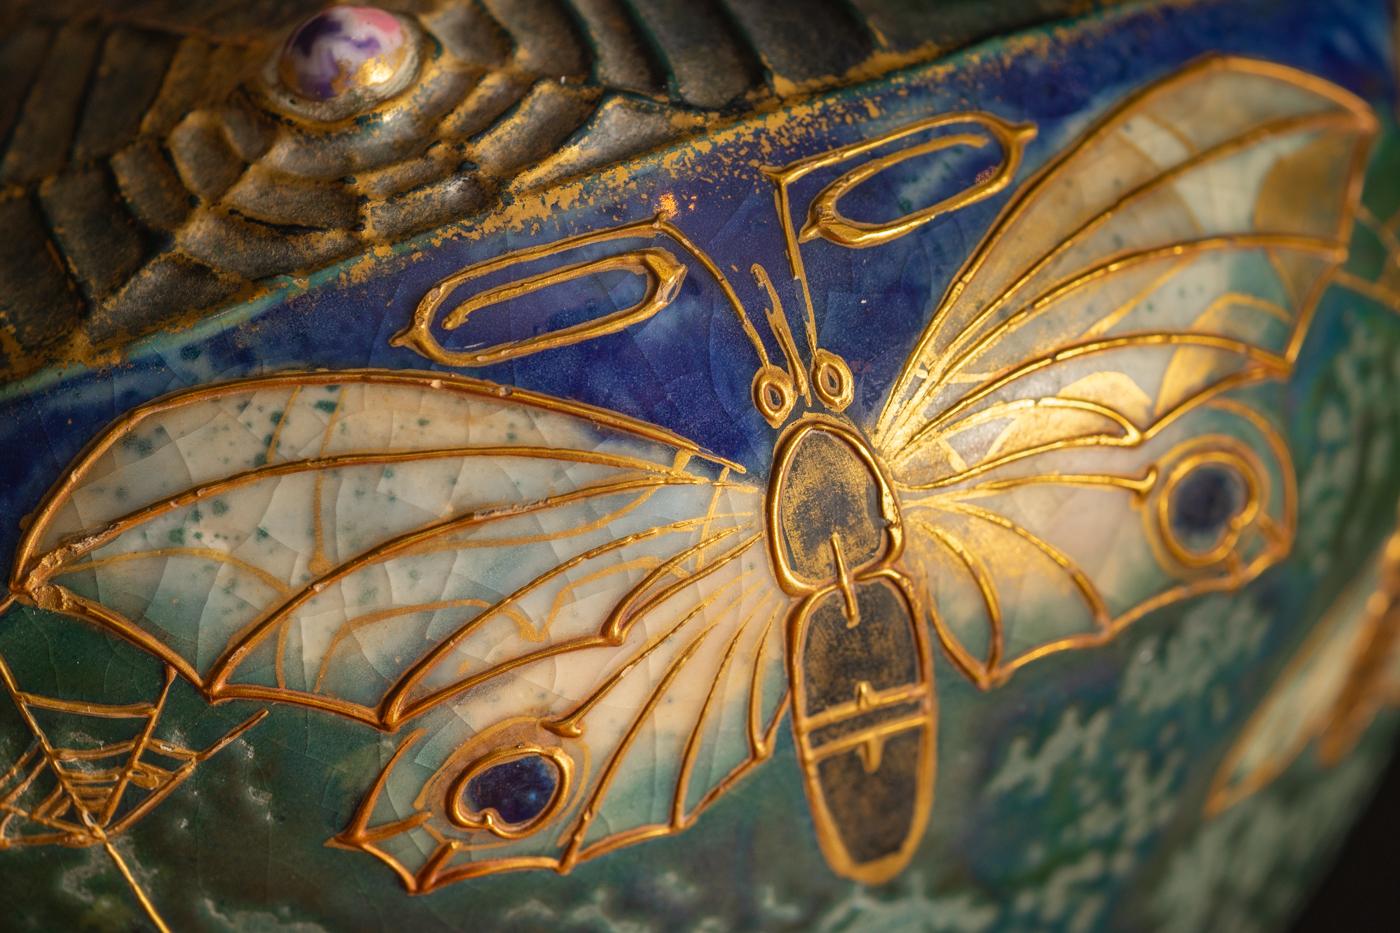 Gres Bijou series Butterflies & Spiderwebs Vase by Reissner & Kessel for Amphora 3